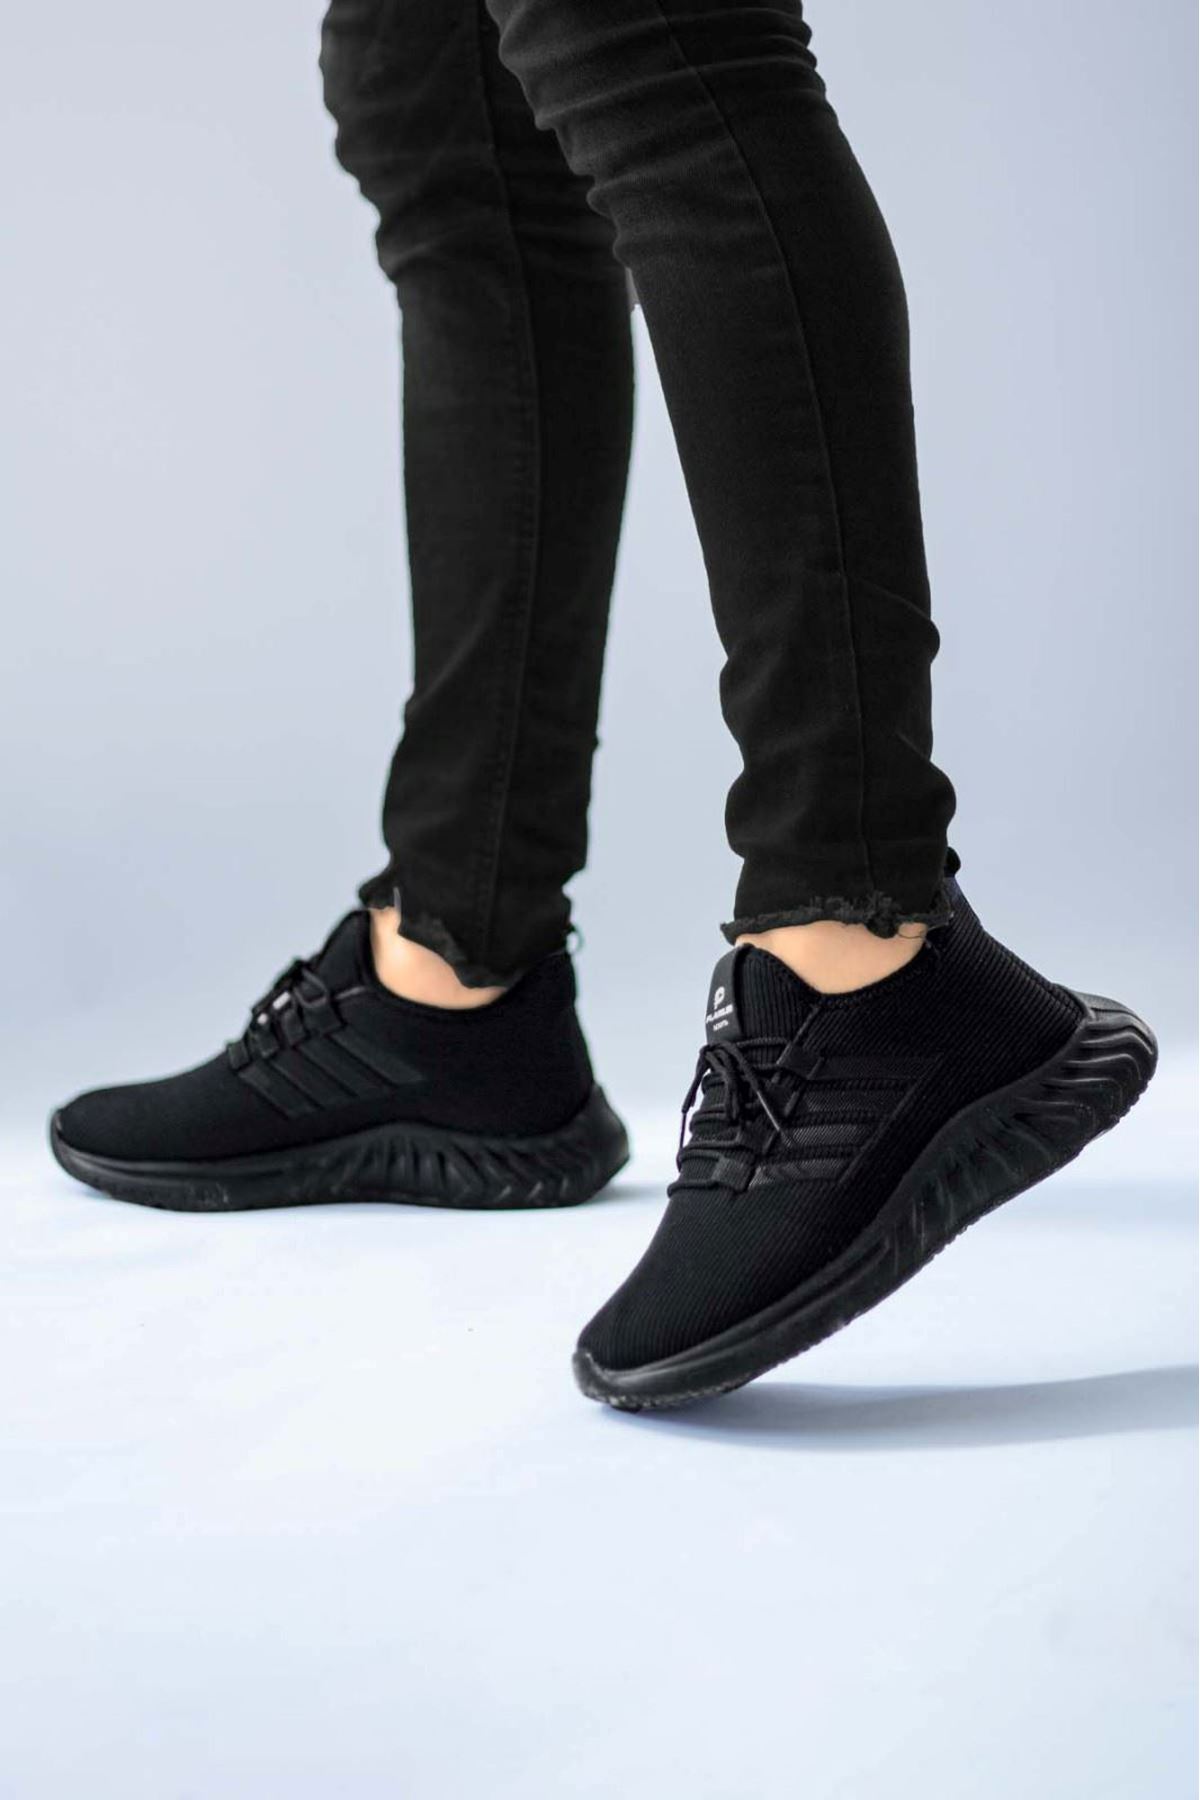 Boy Uzatan Ayakkabı Gizli Topuklu Siyah Çizgili Yazlık Erkek Spor Ayakkabı MYY487